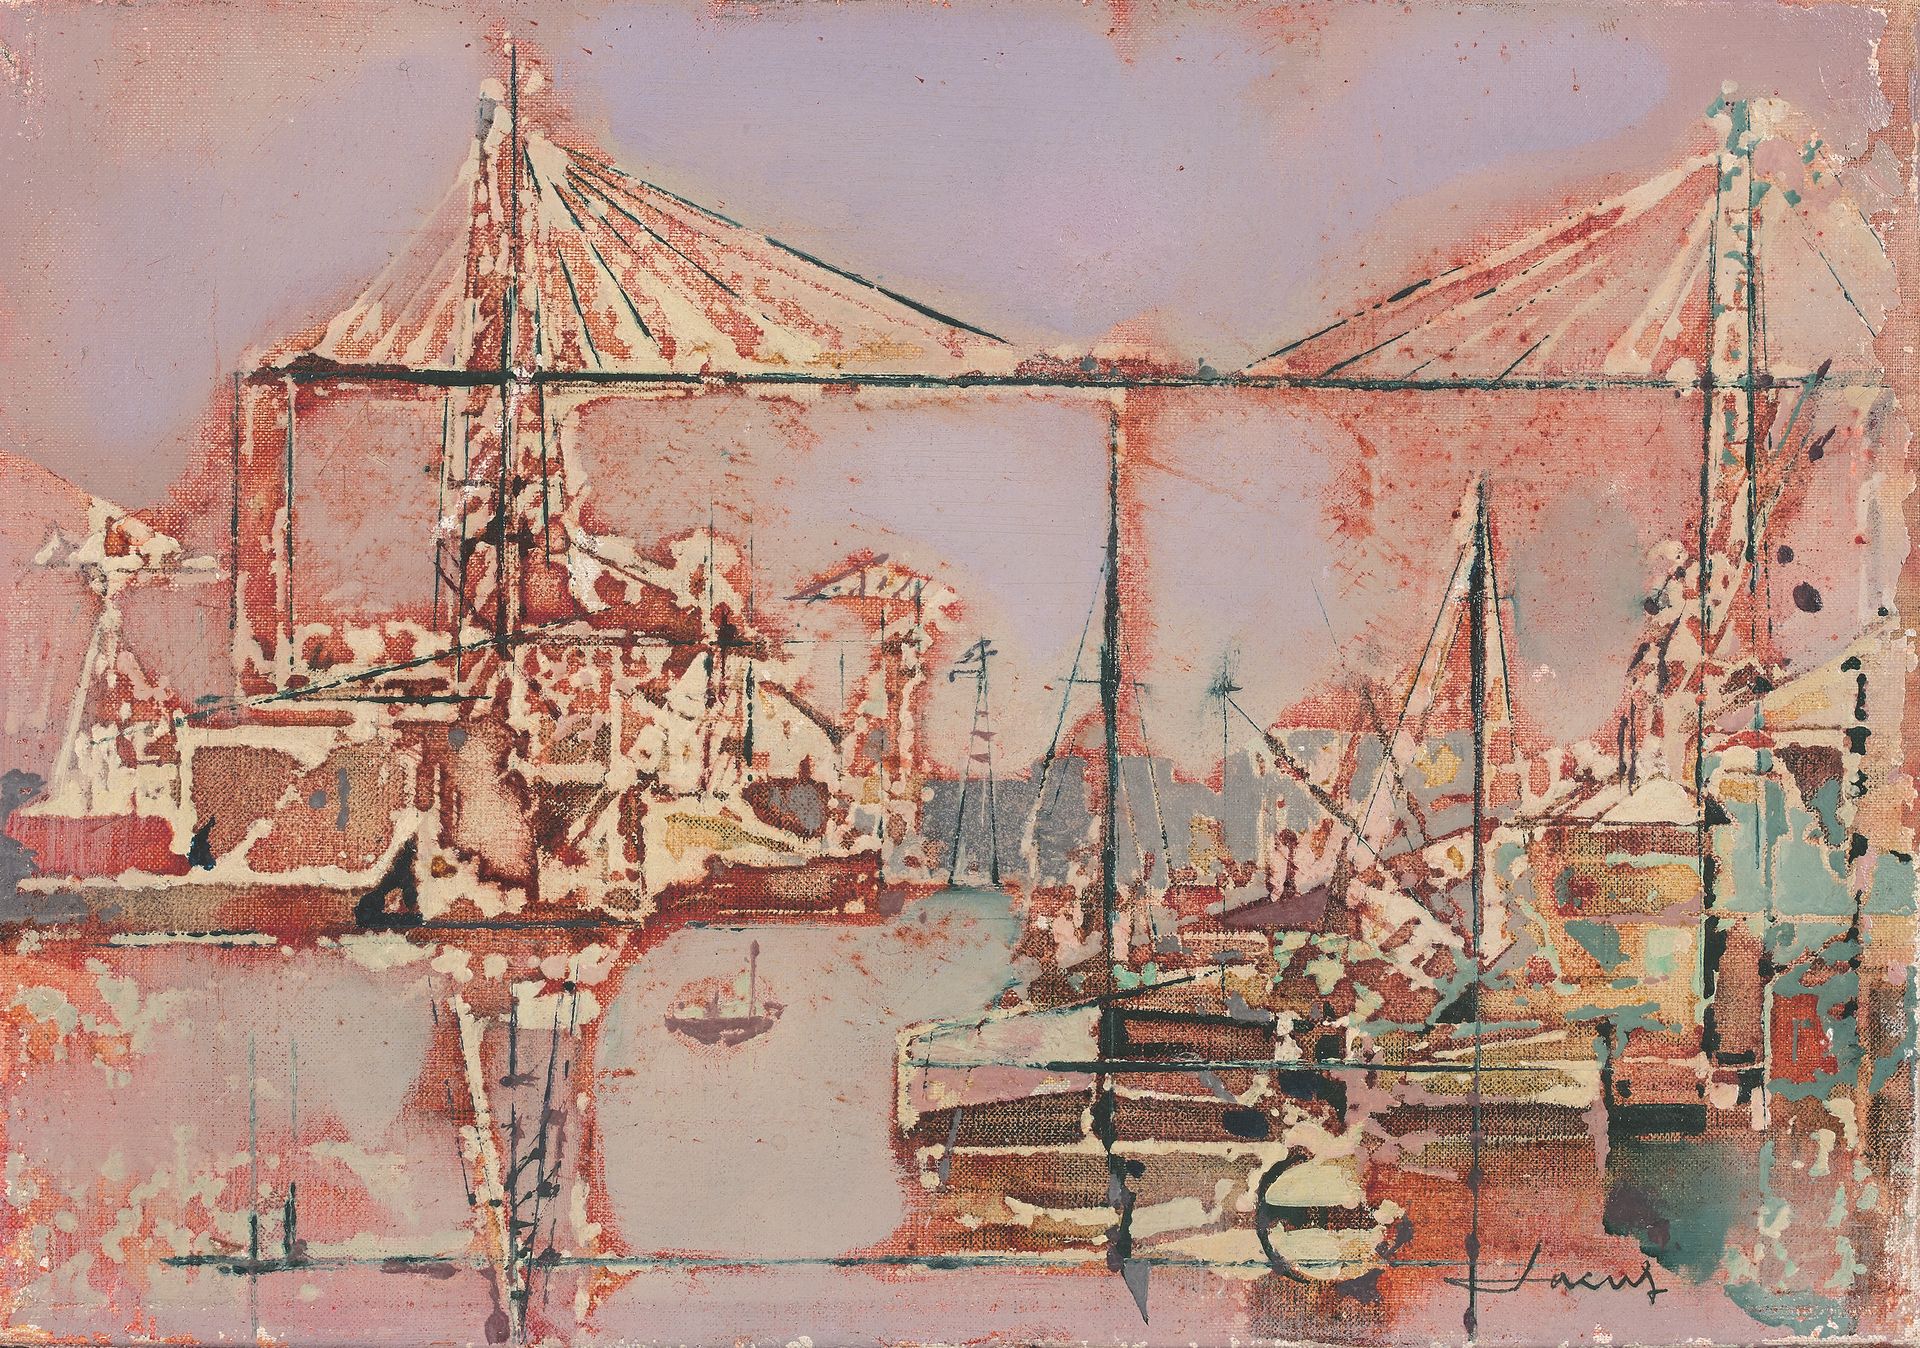 Jean Théobald JACUS (né en 1924) 运输桥
布面油画，右下角有签名。
19 x 27 cm。
来源。
.收集F.，巴黎。